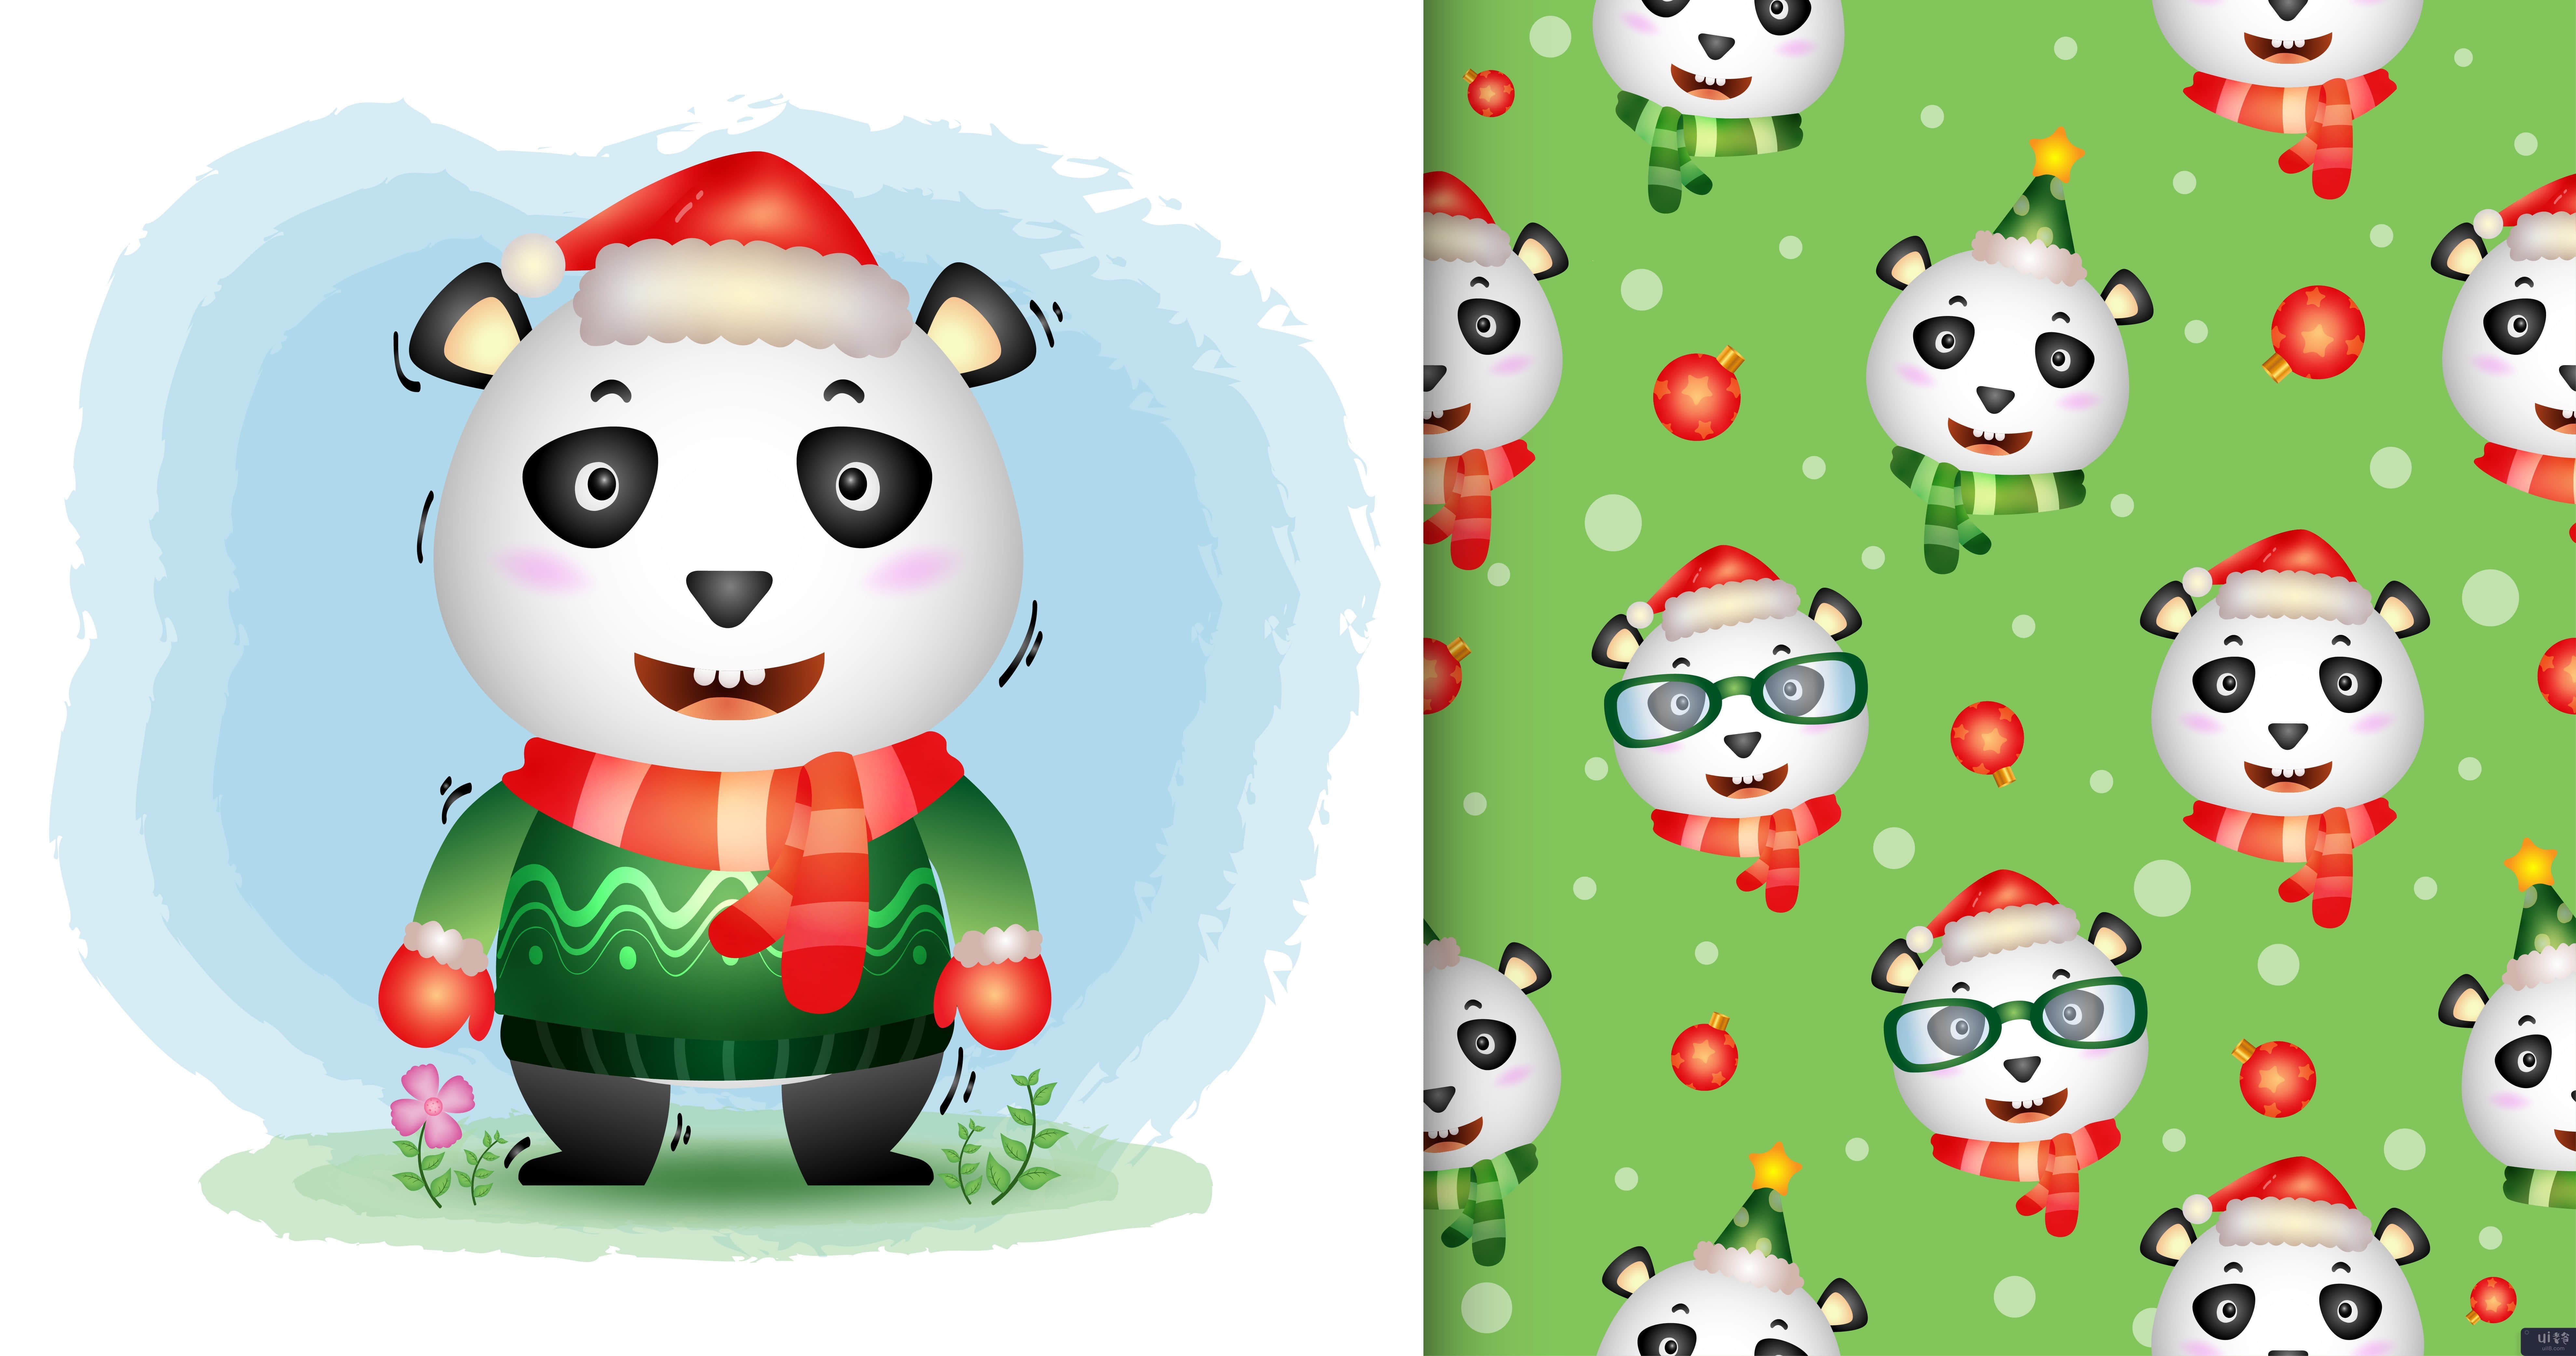 一个可爱的熊猫圣诞人物(a cute panda christmas characters)插图